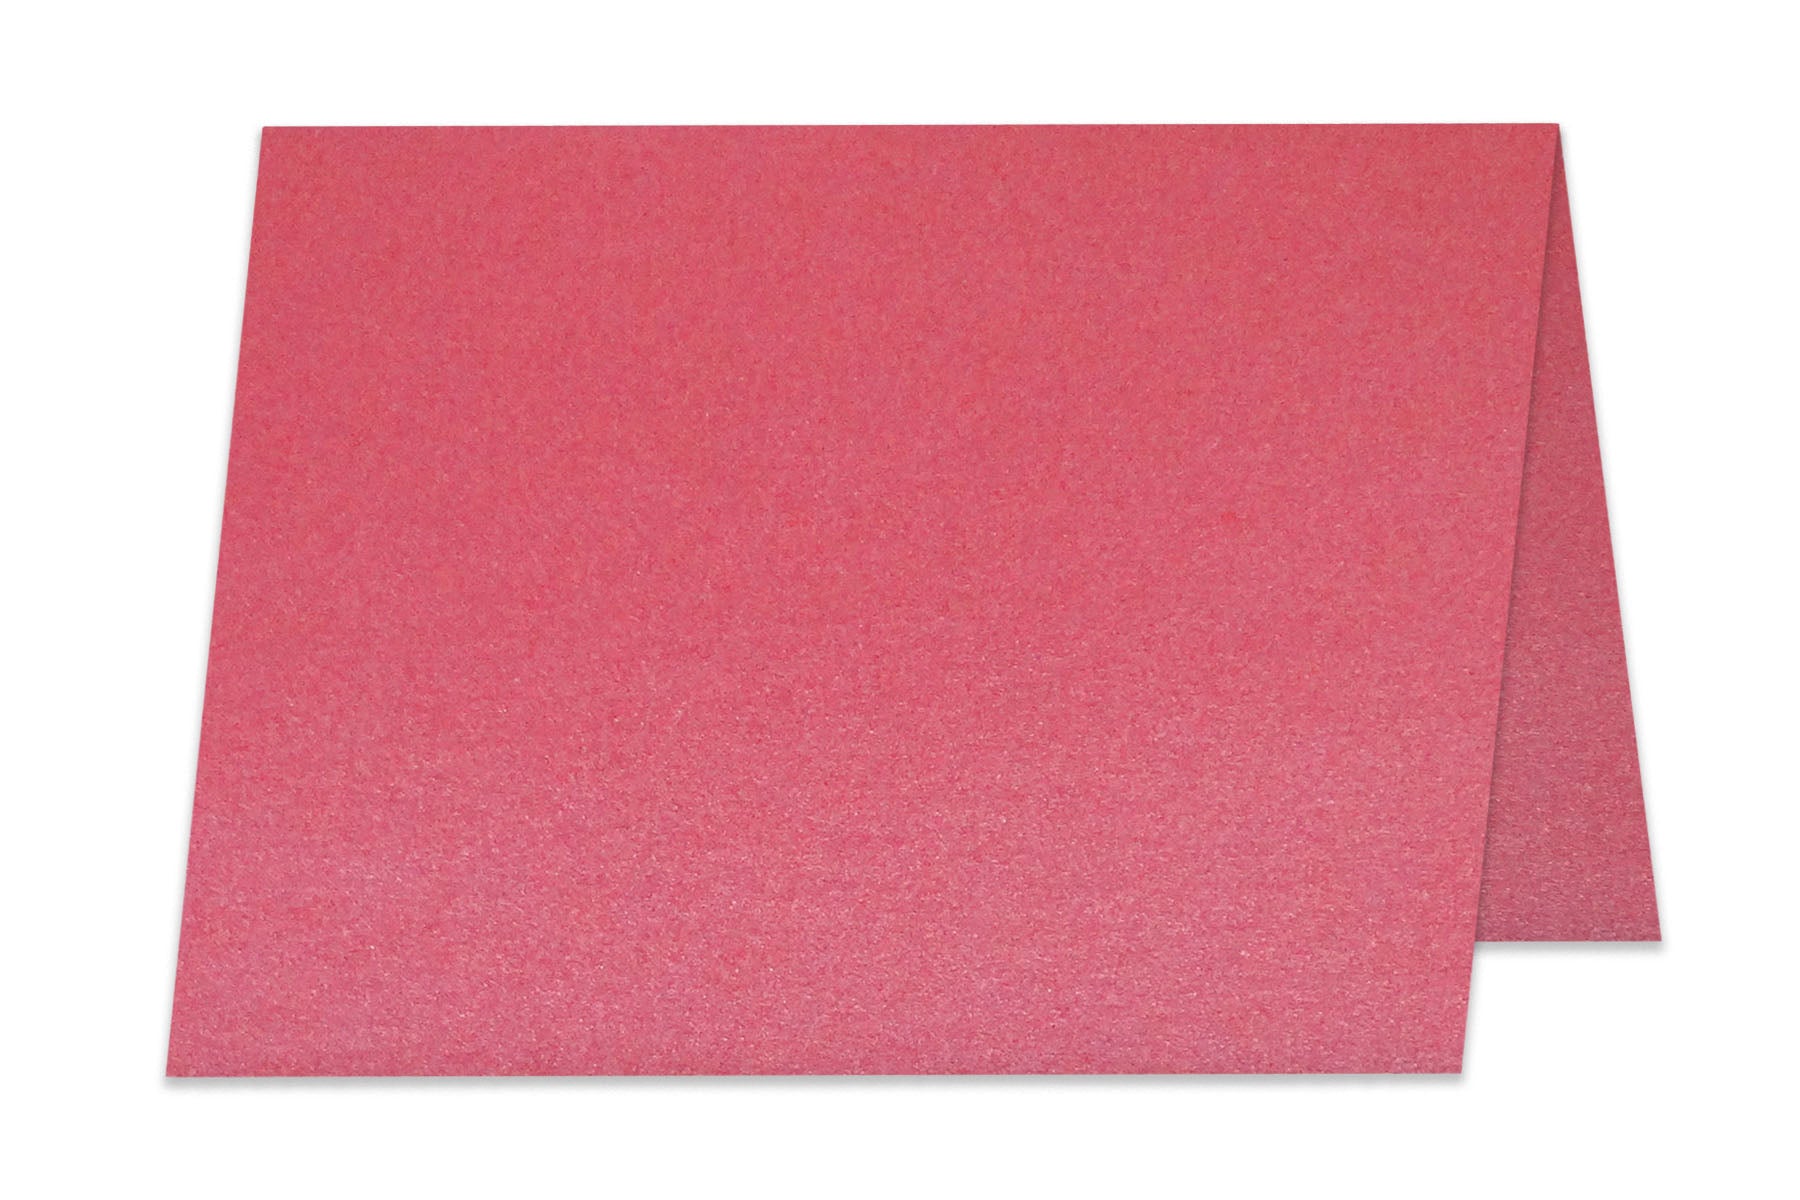 Metallic DARK RED MARS 12X12 (Square) Paper 105C Cardstock - 100